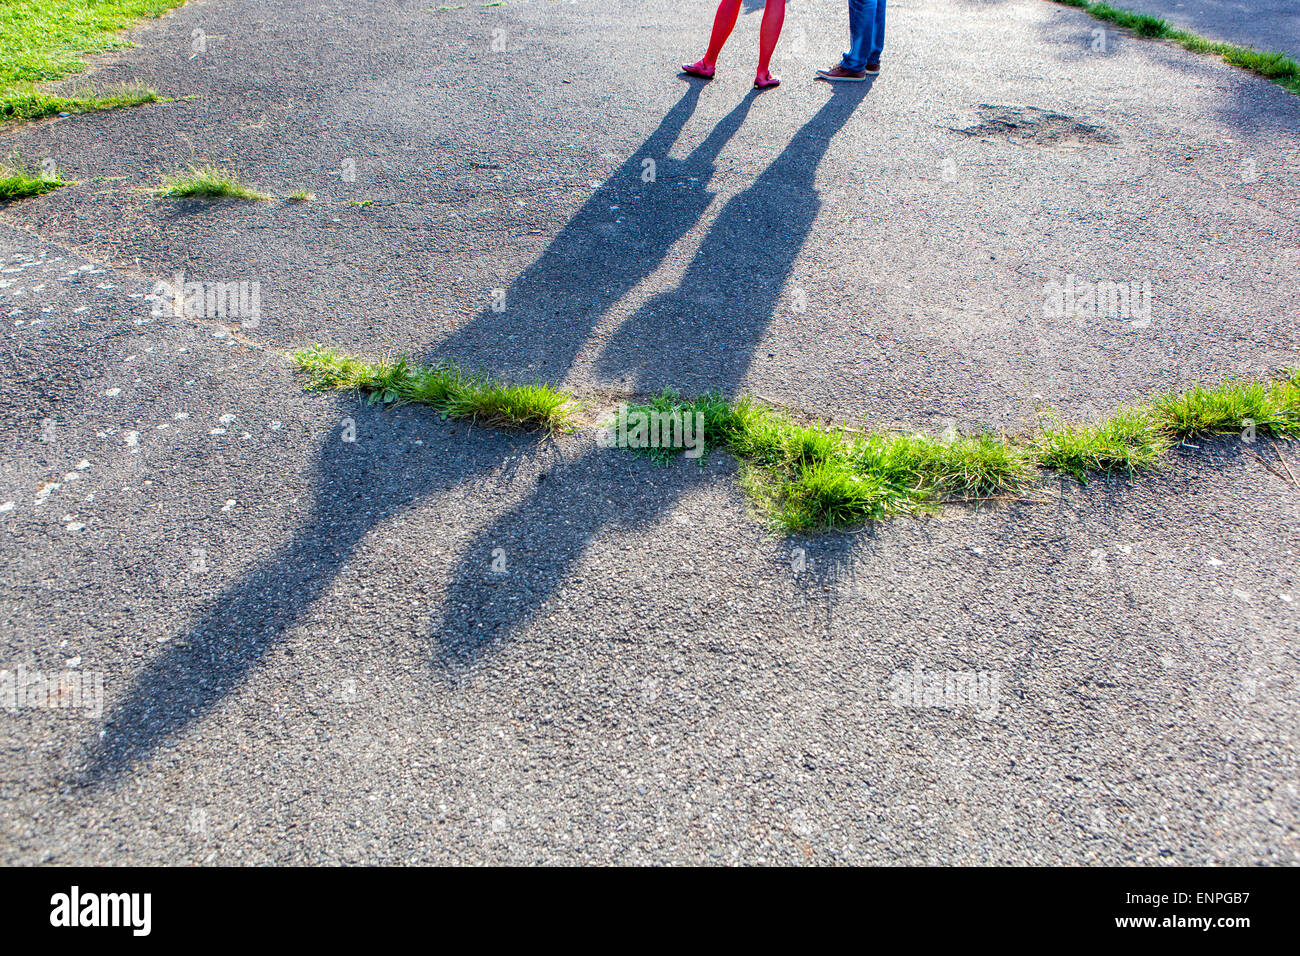 Shadows of people on asphalt Stock Photo